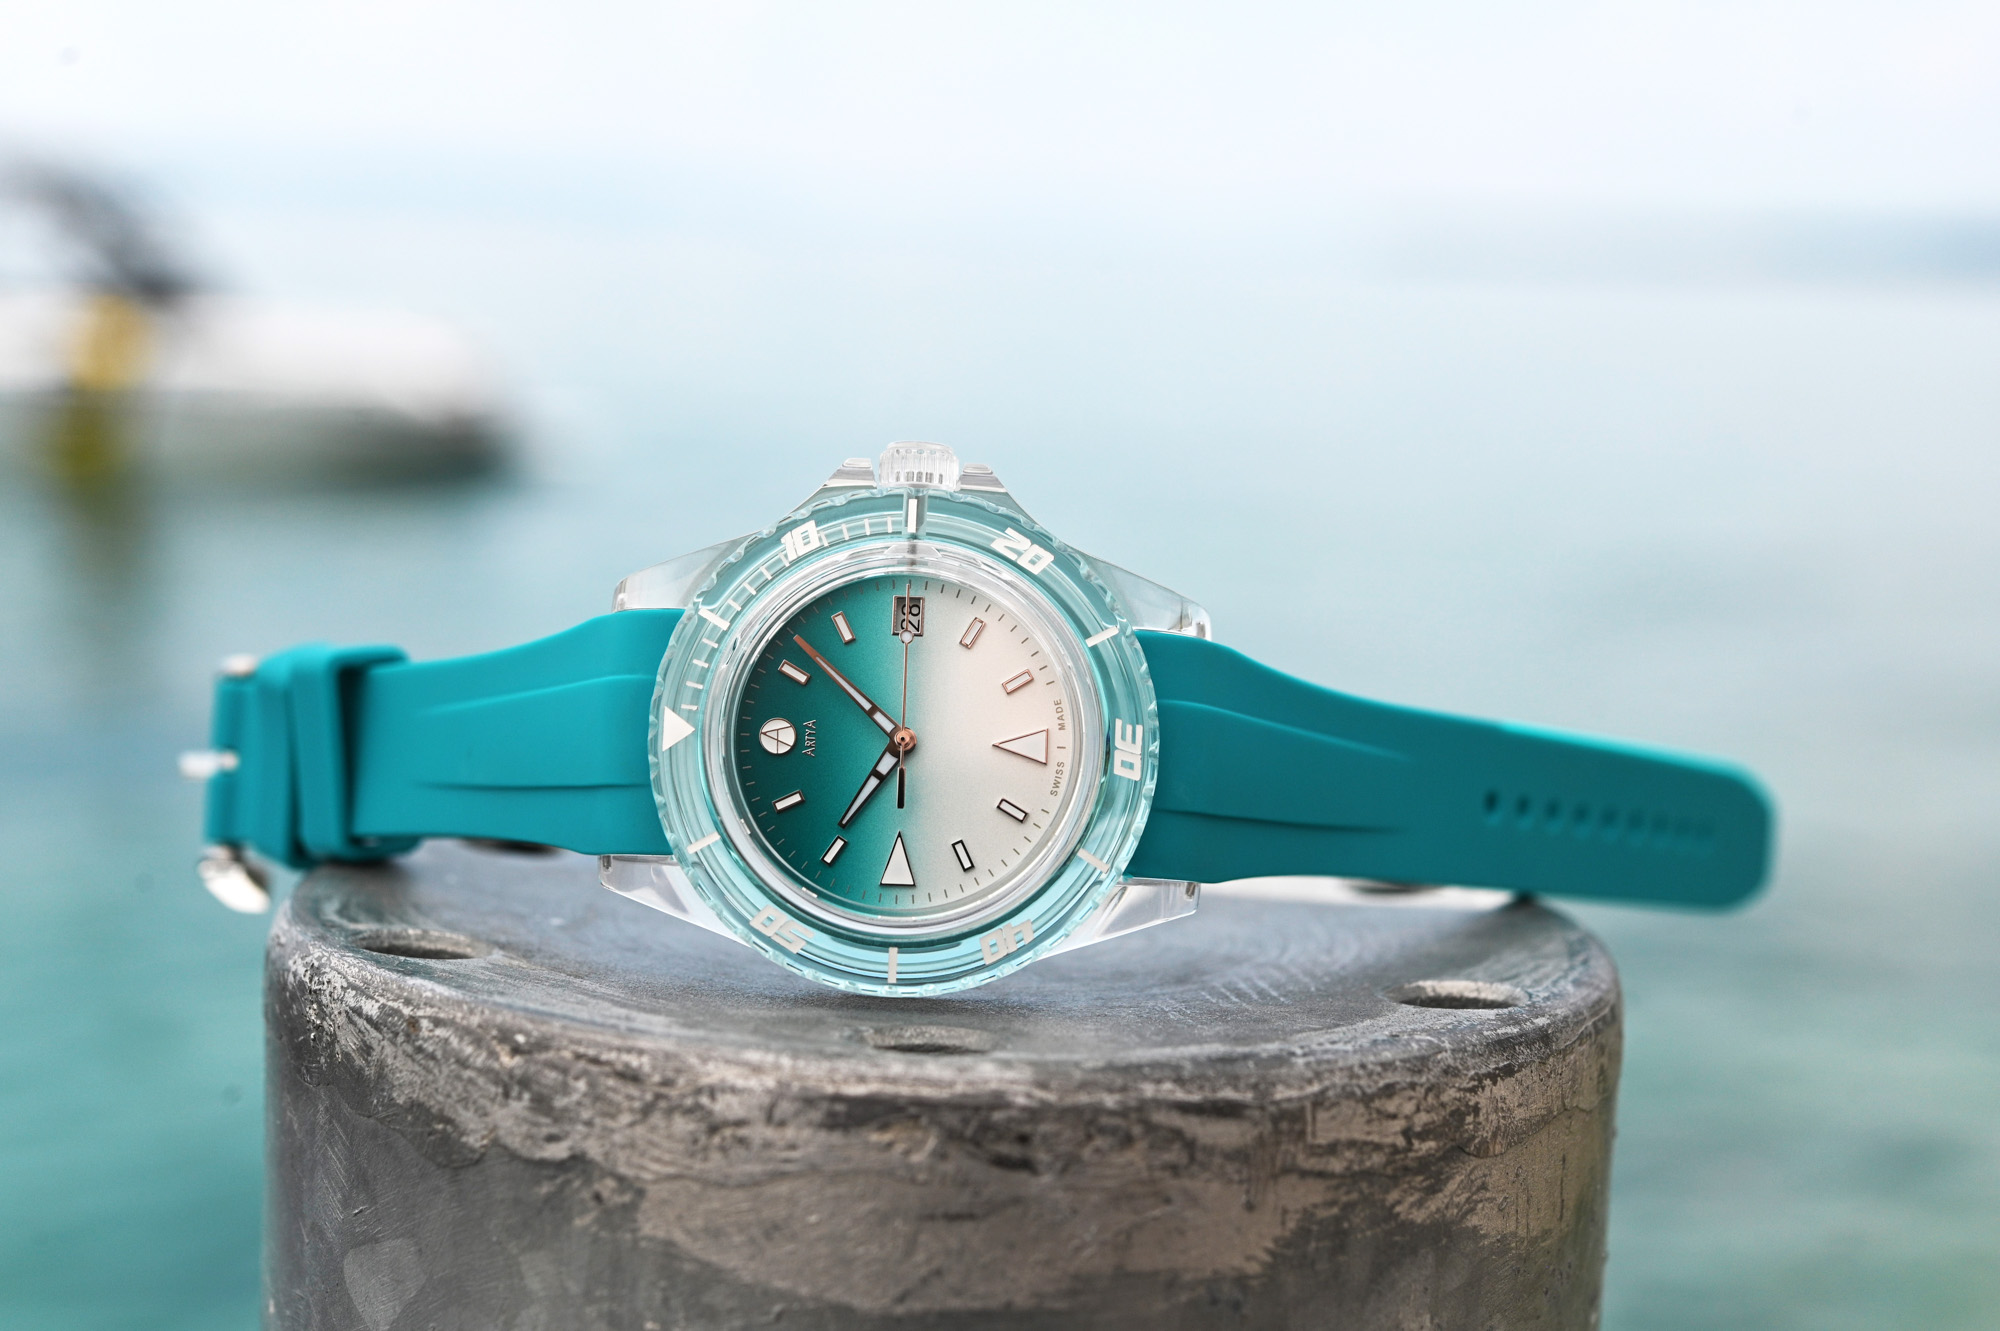 Новинка: спортивные часы ArtyA AquaSaphir с сапфировым стеклом